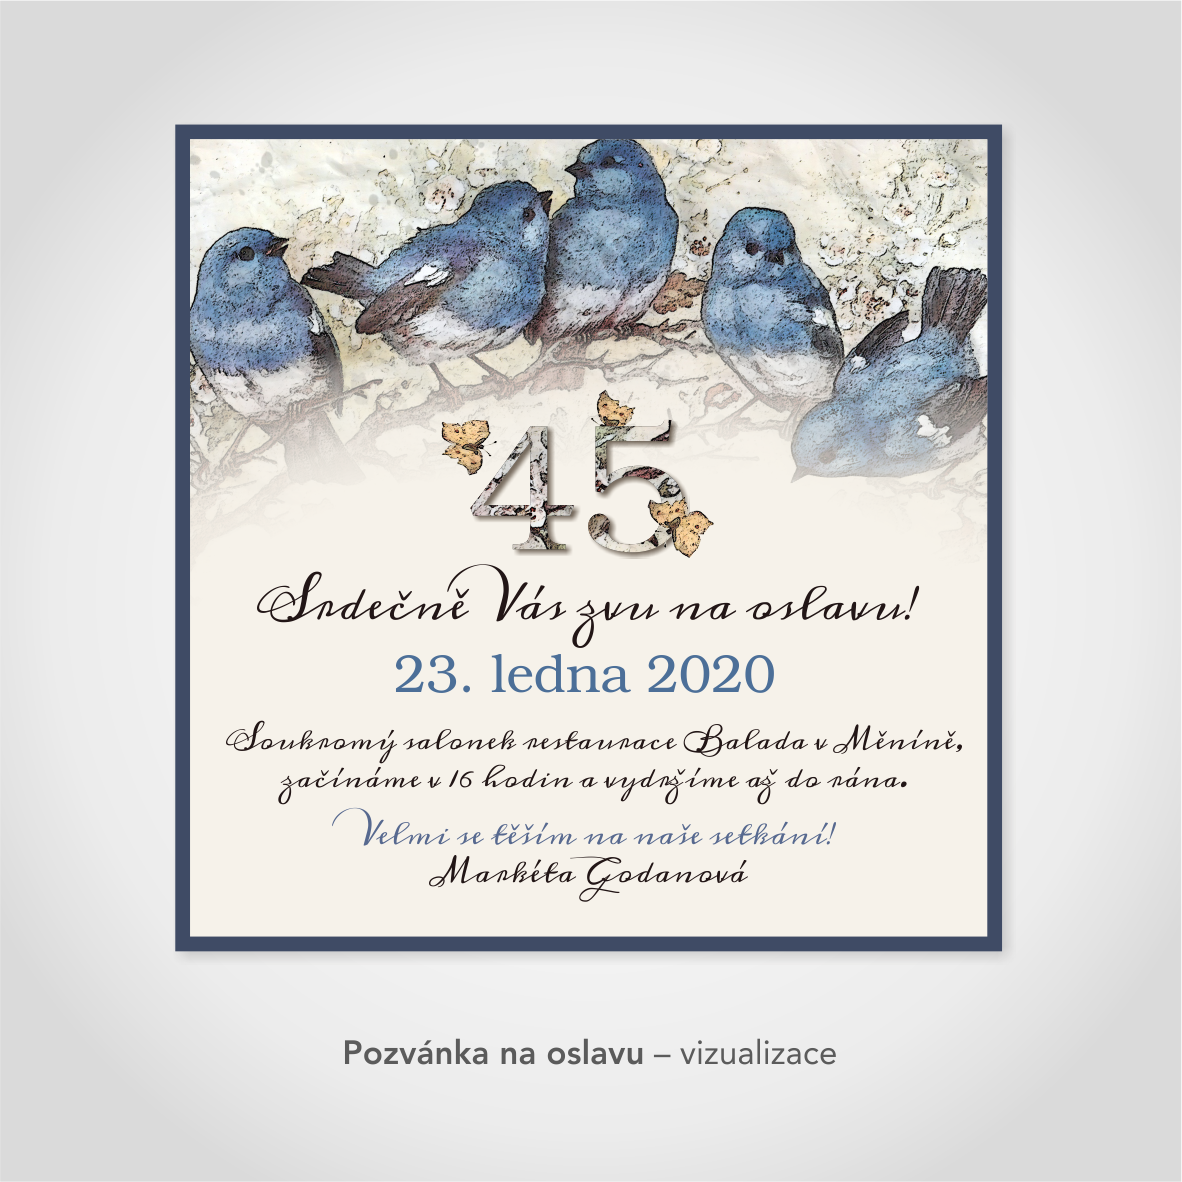 Pozvánka na oslavu – s modrými ptáčky, barva modrá + krémová.